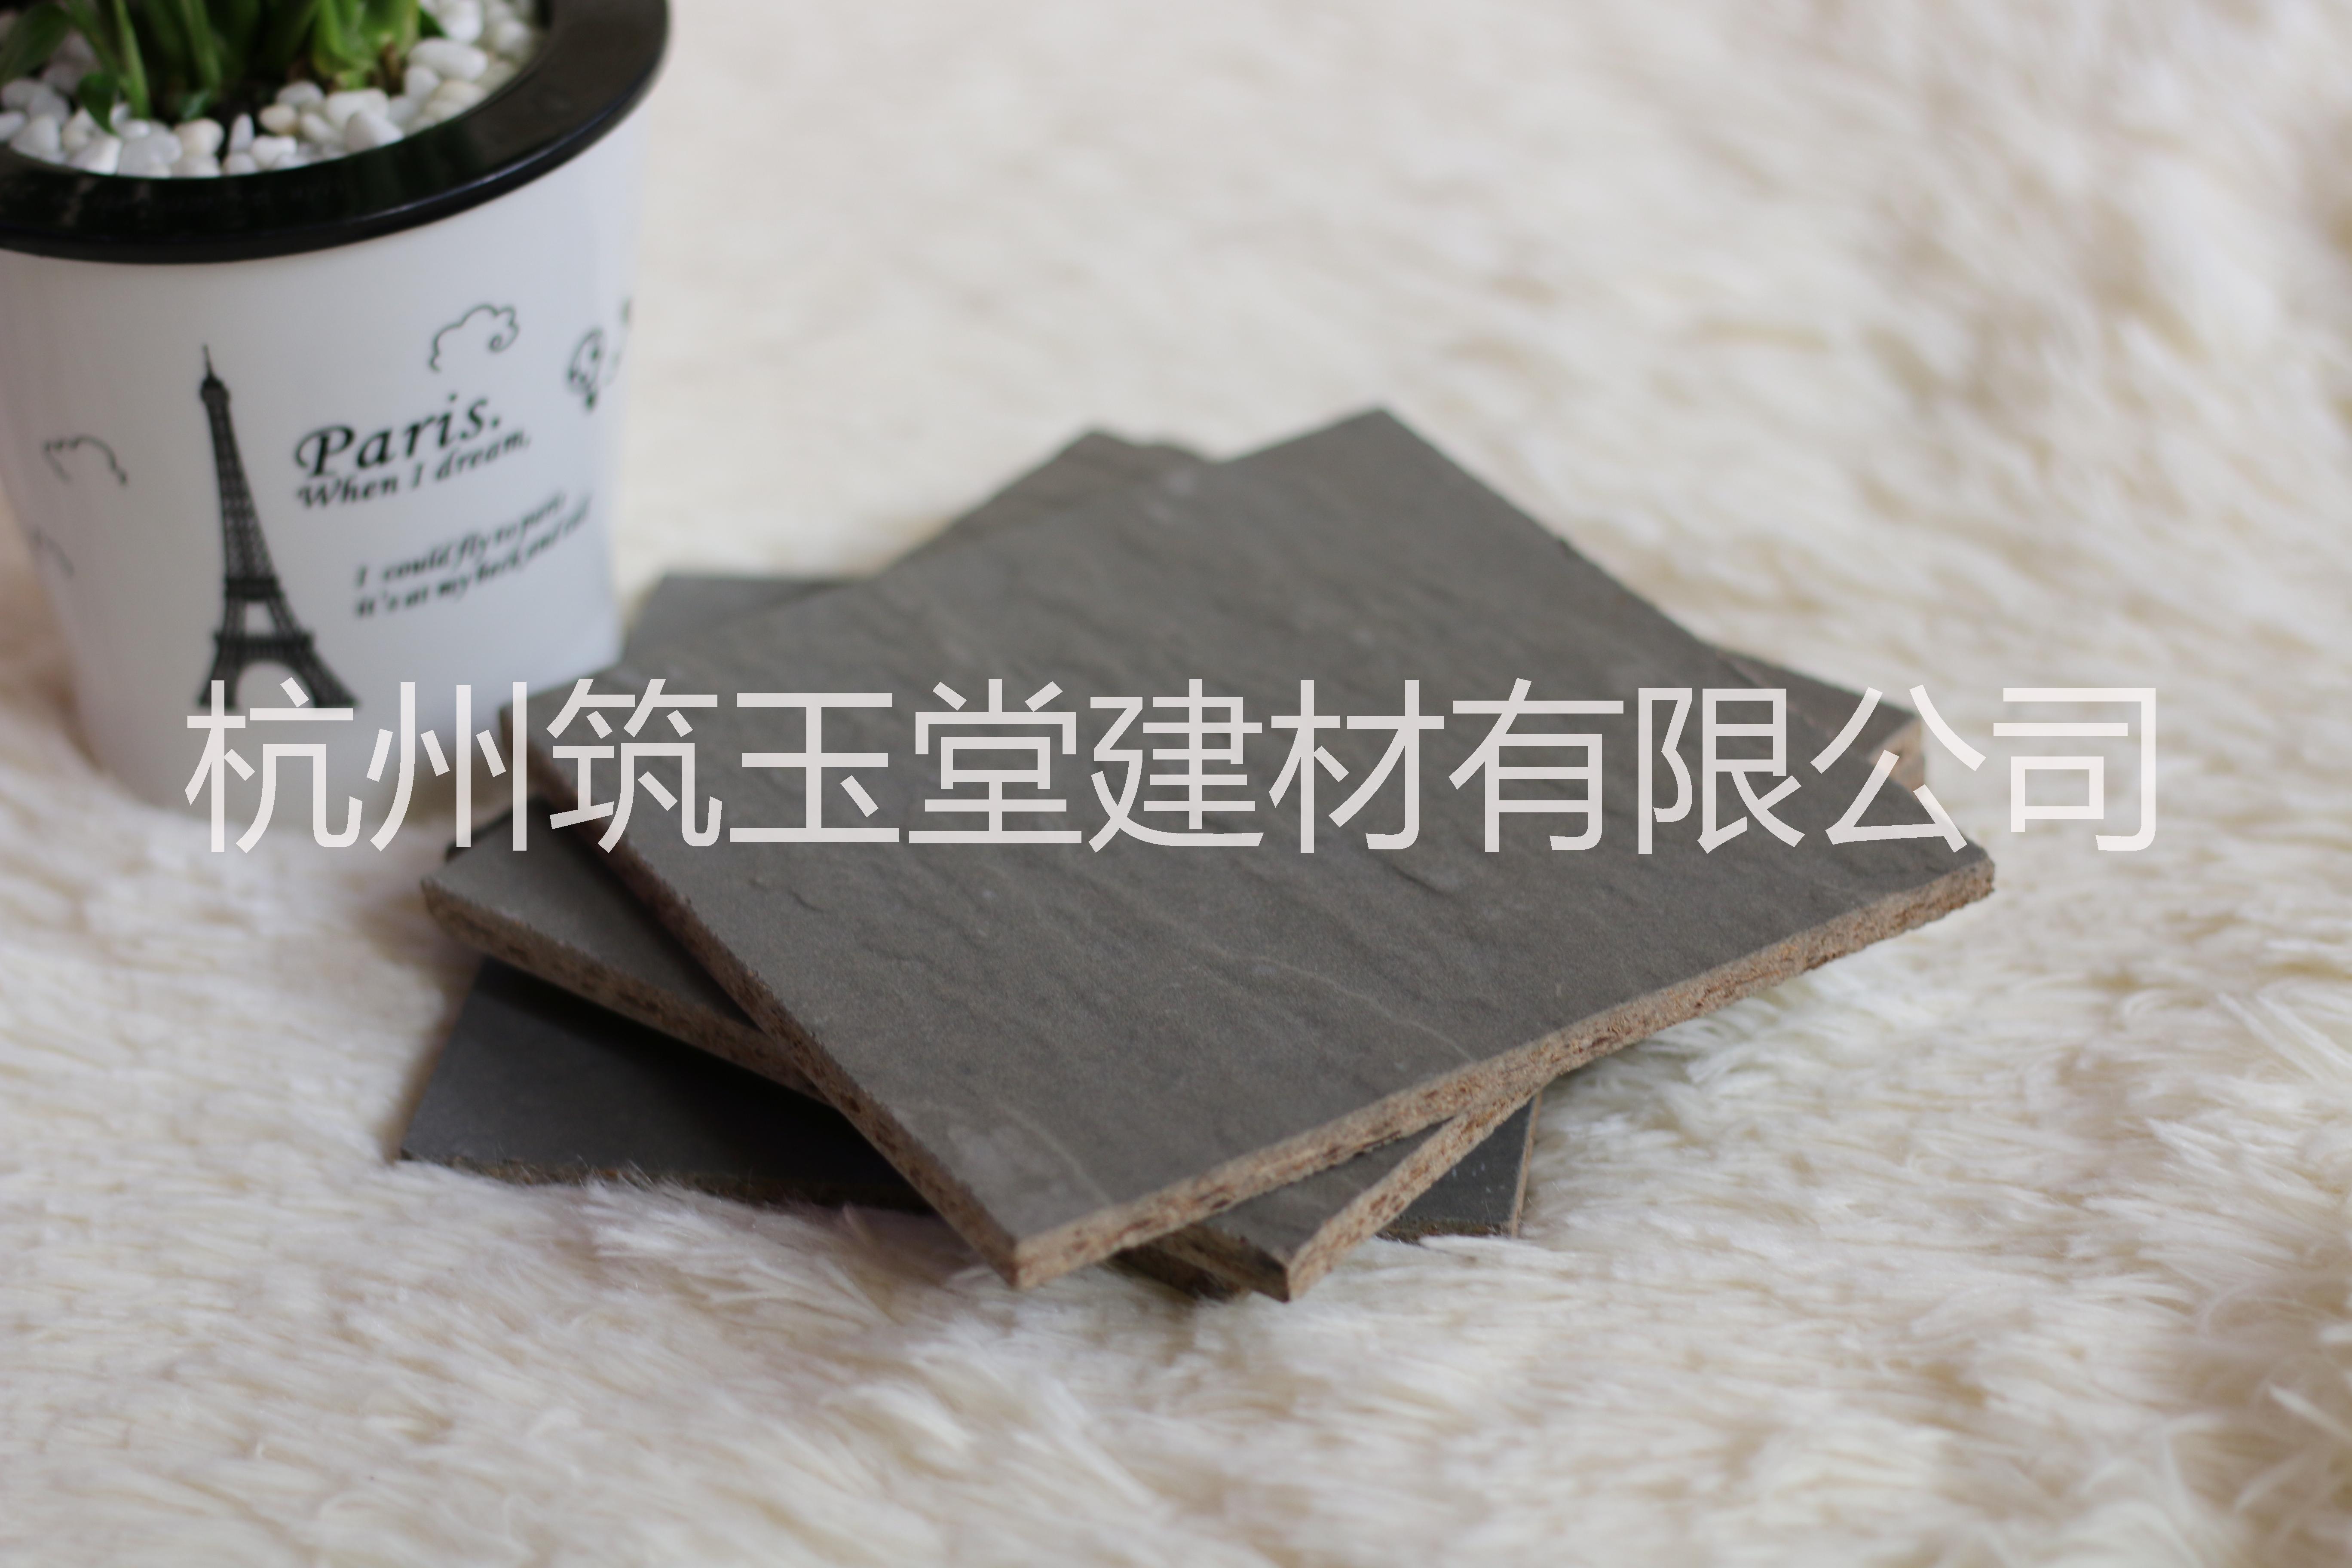 木丝板 木丝水泥板 石纹水泥板 复古风装饰板 雕刻水泥板 VIVA木丝板 木丝水泥板